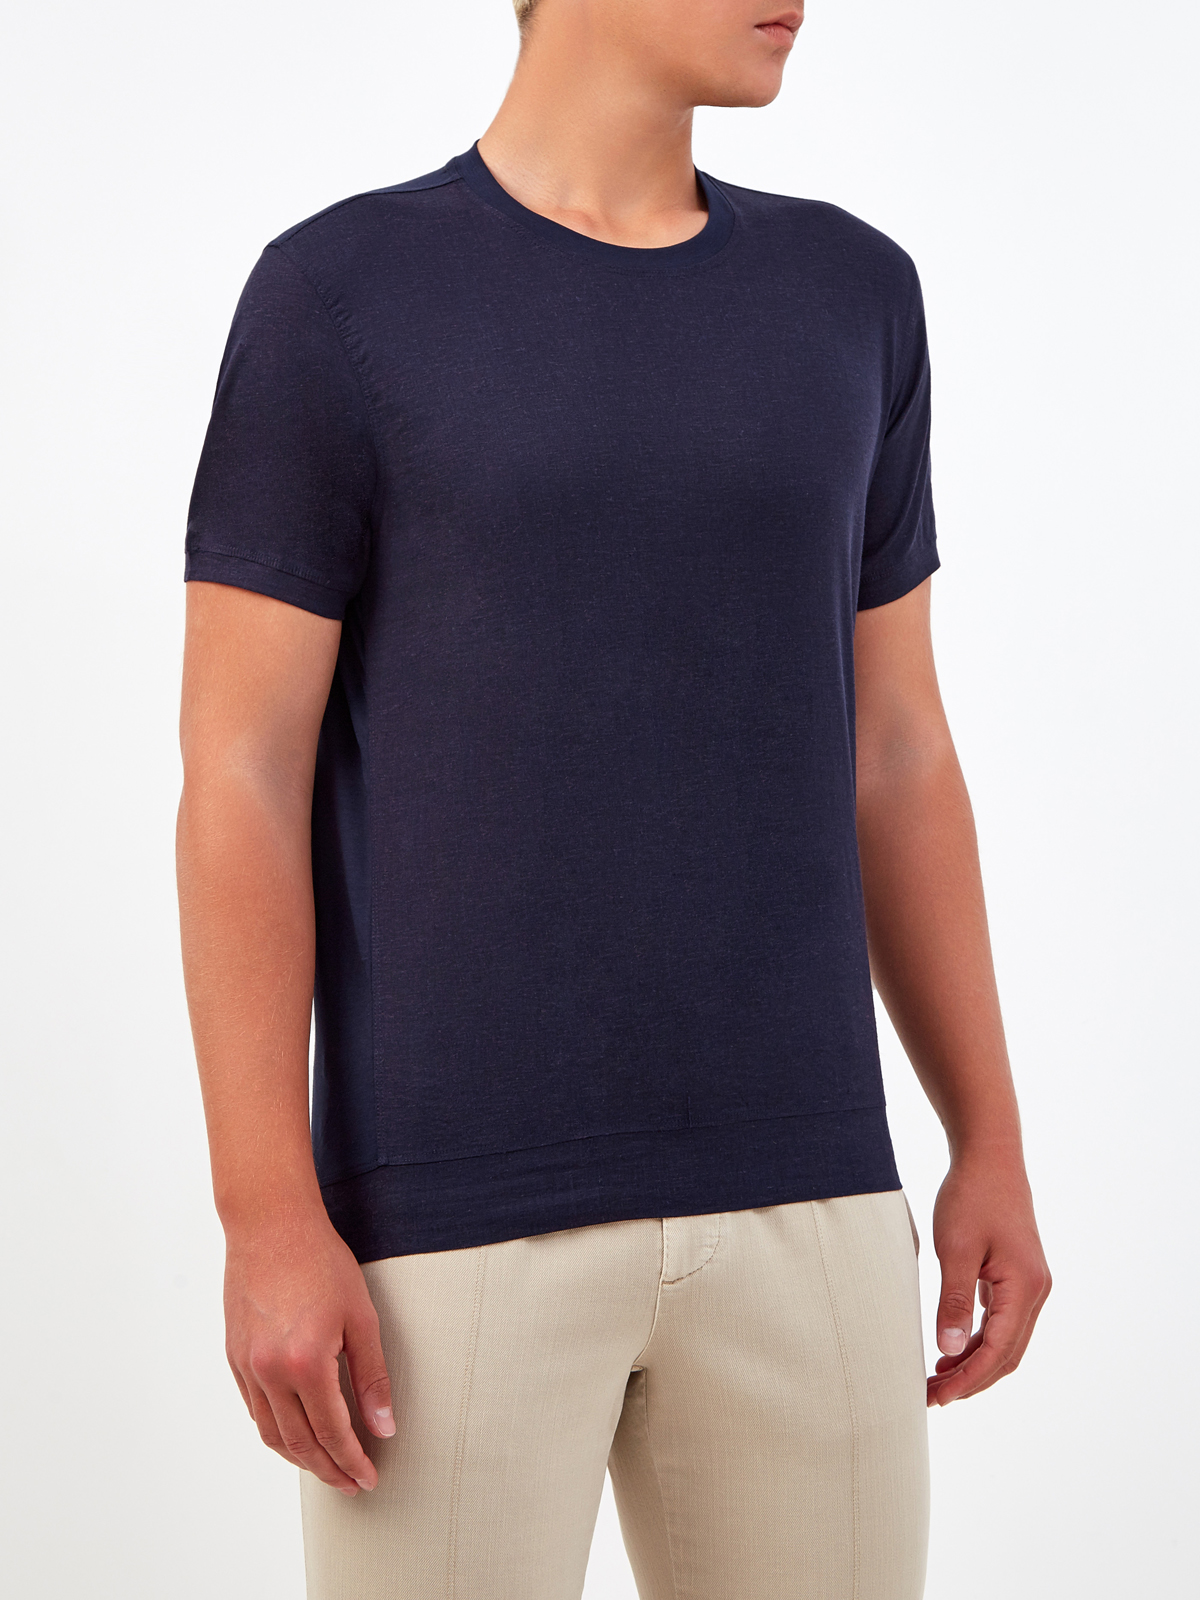 Комбинированная льняная футболка с воротом в рубчик CUDGI, цвет синий, размер 50;52;54;56;48 - фото 3